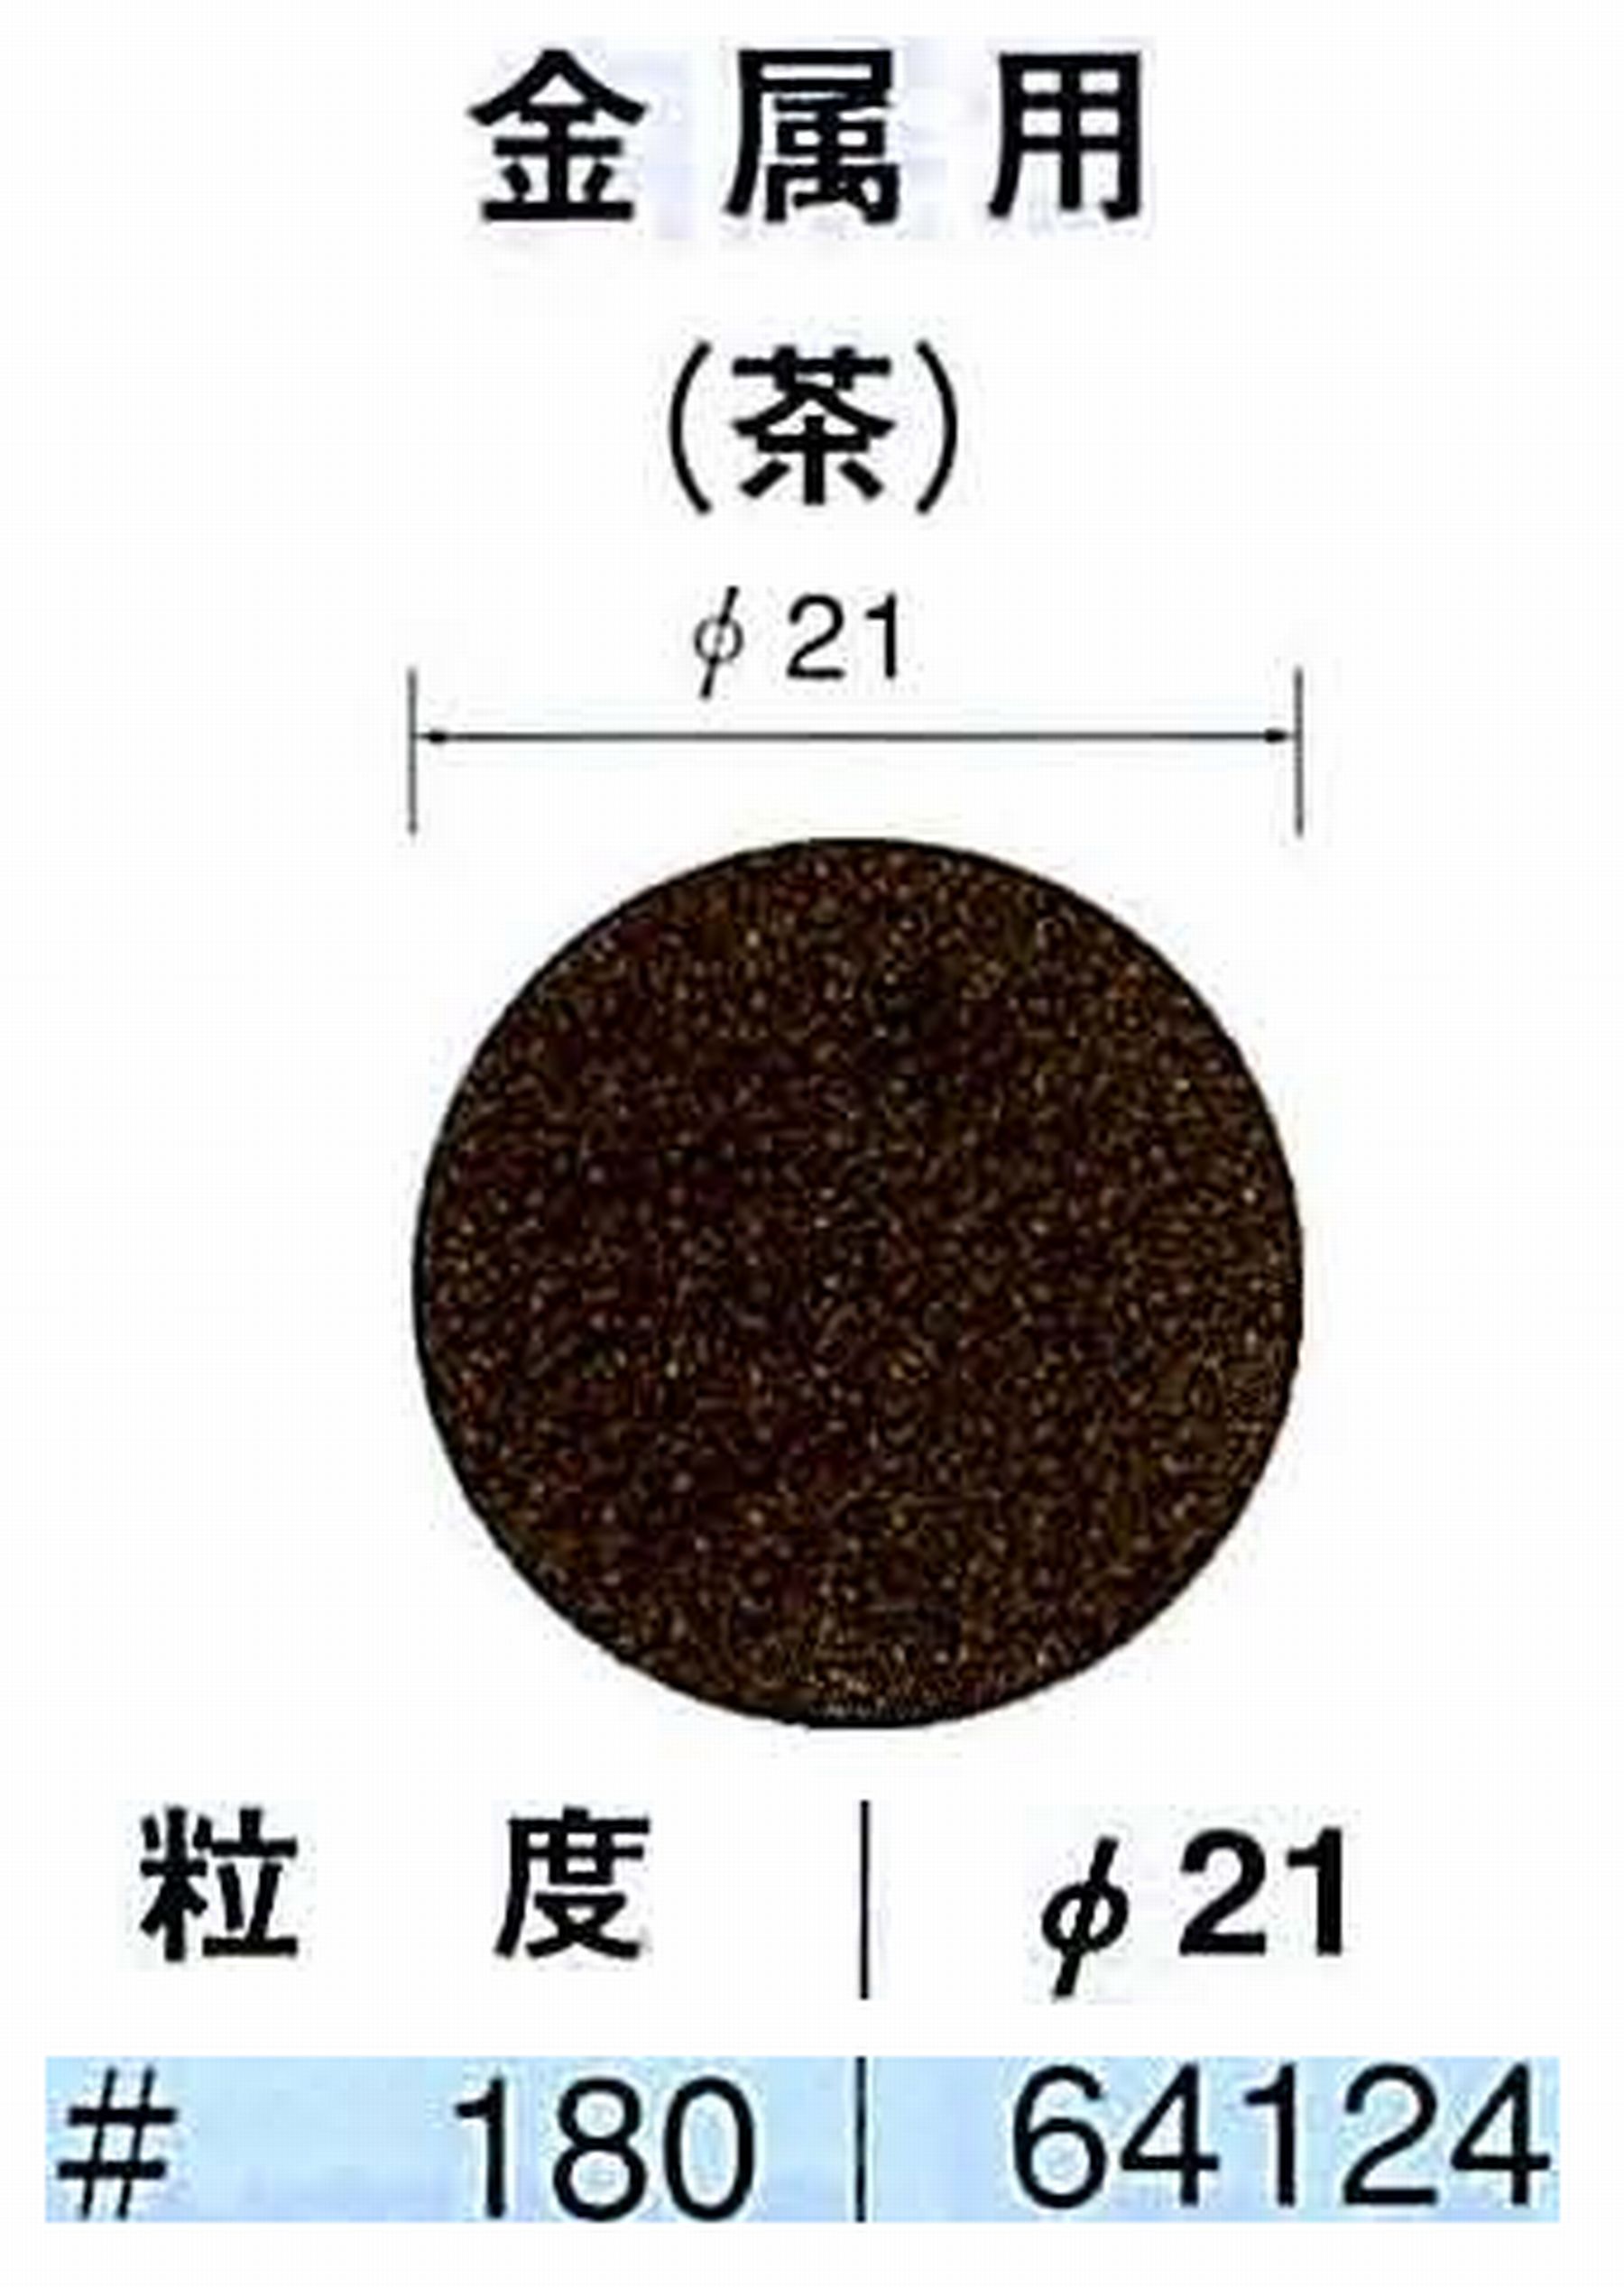 ナカニシ/NAKANISHI アングルグラインダ(電動・エアー) アングルアタッチメント専用工具 サンドペーパーディスク(布基材タイプ)裏面のり処理 64124